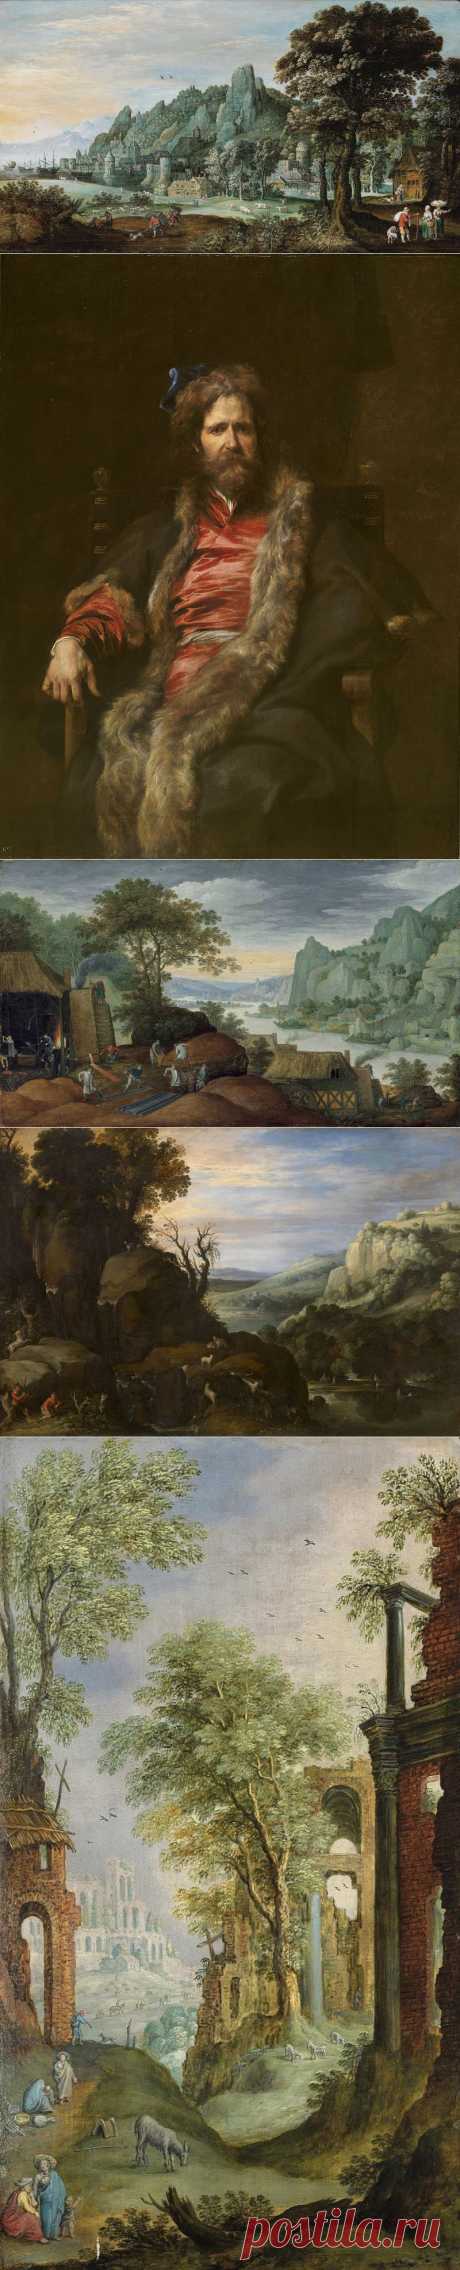 Фламандские живописцы Ryckaert. Martin Ryckaert (1587 – 1631). - ч.1.